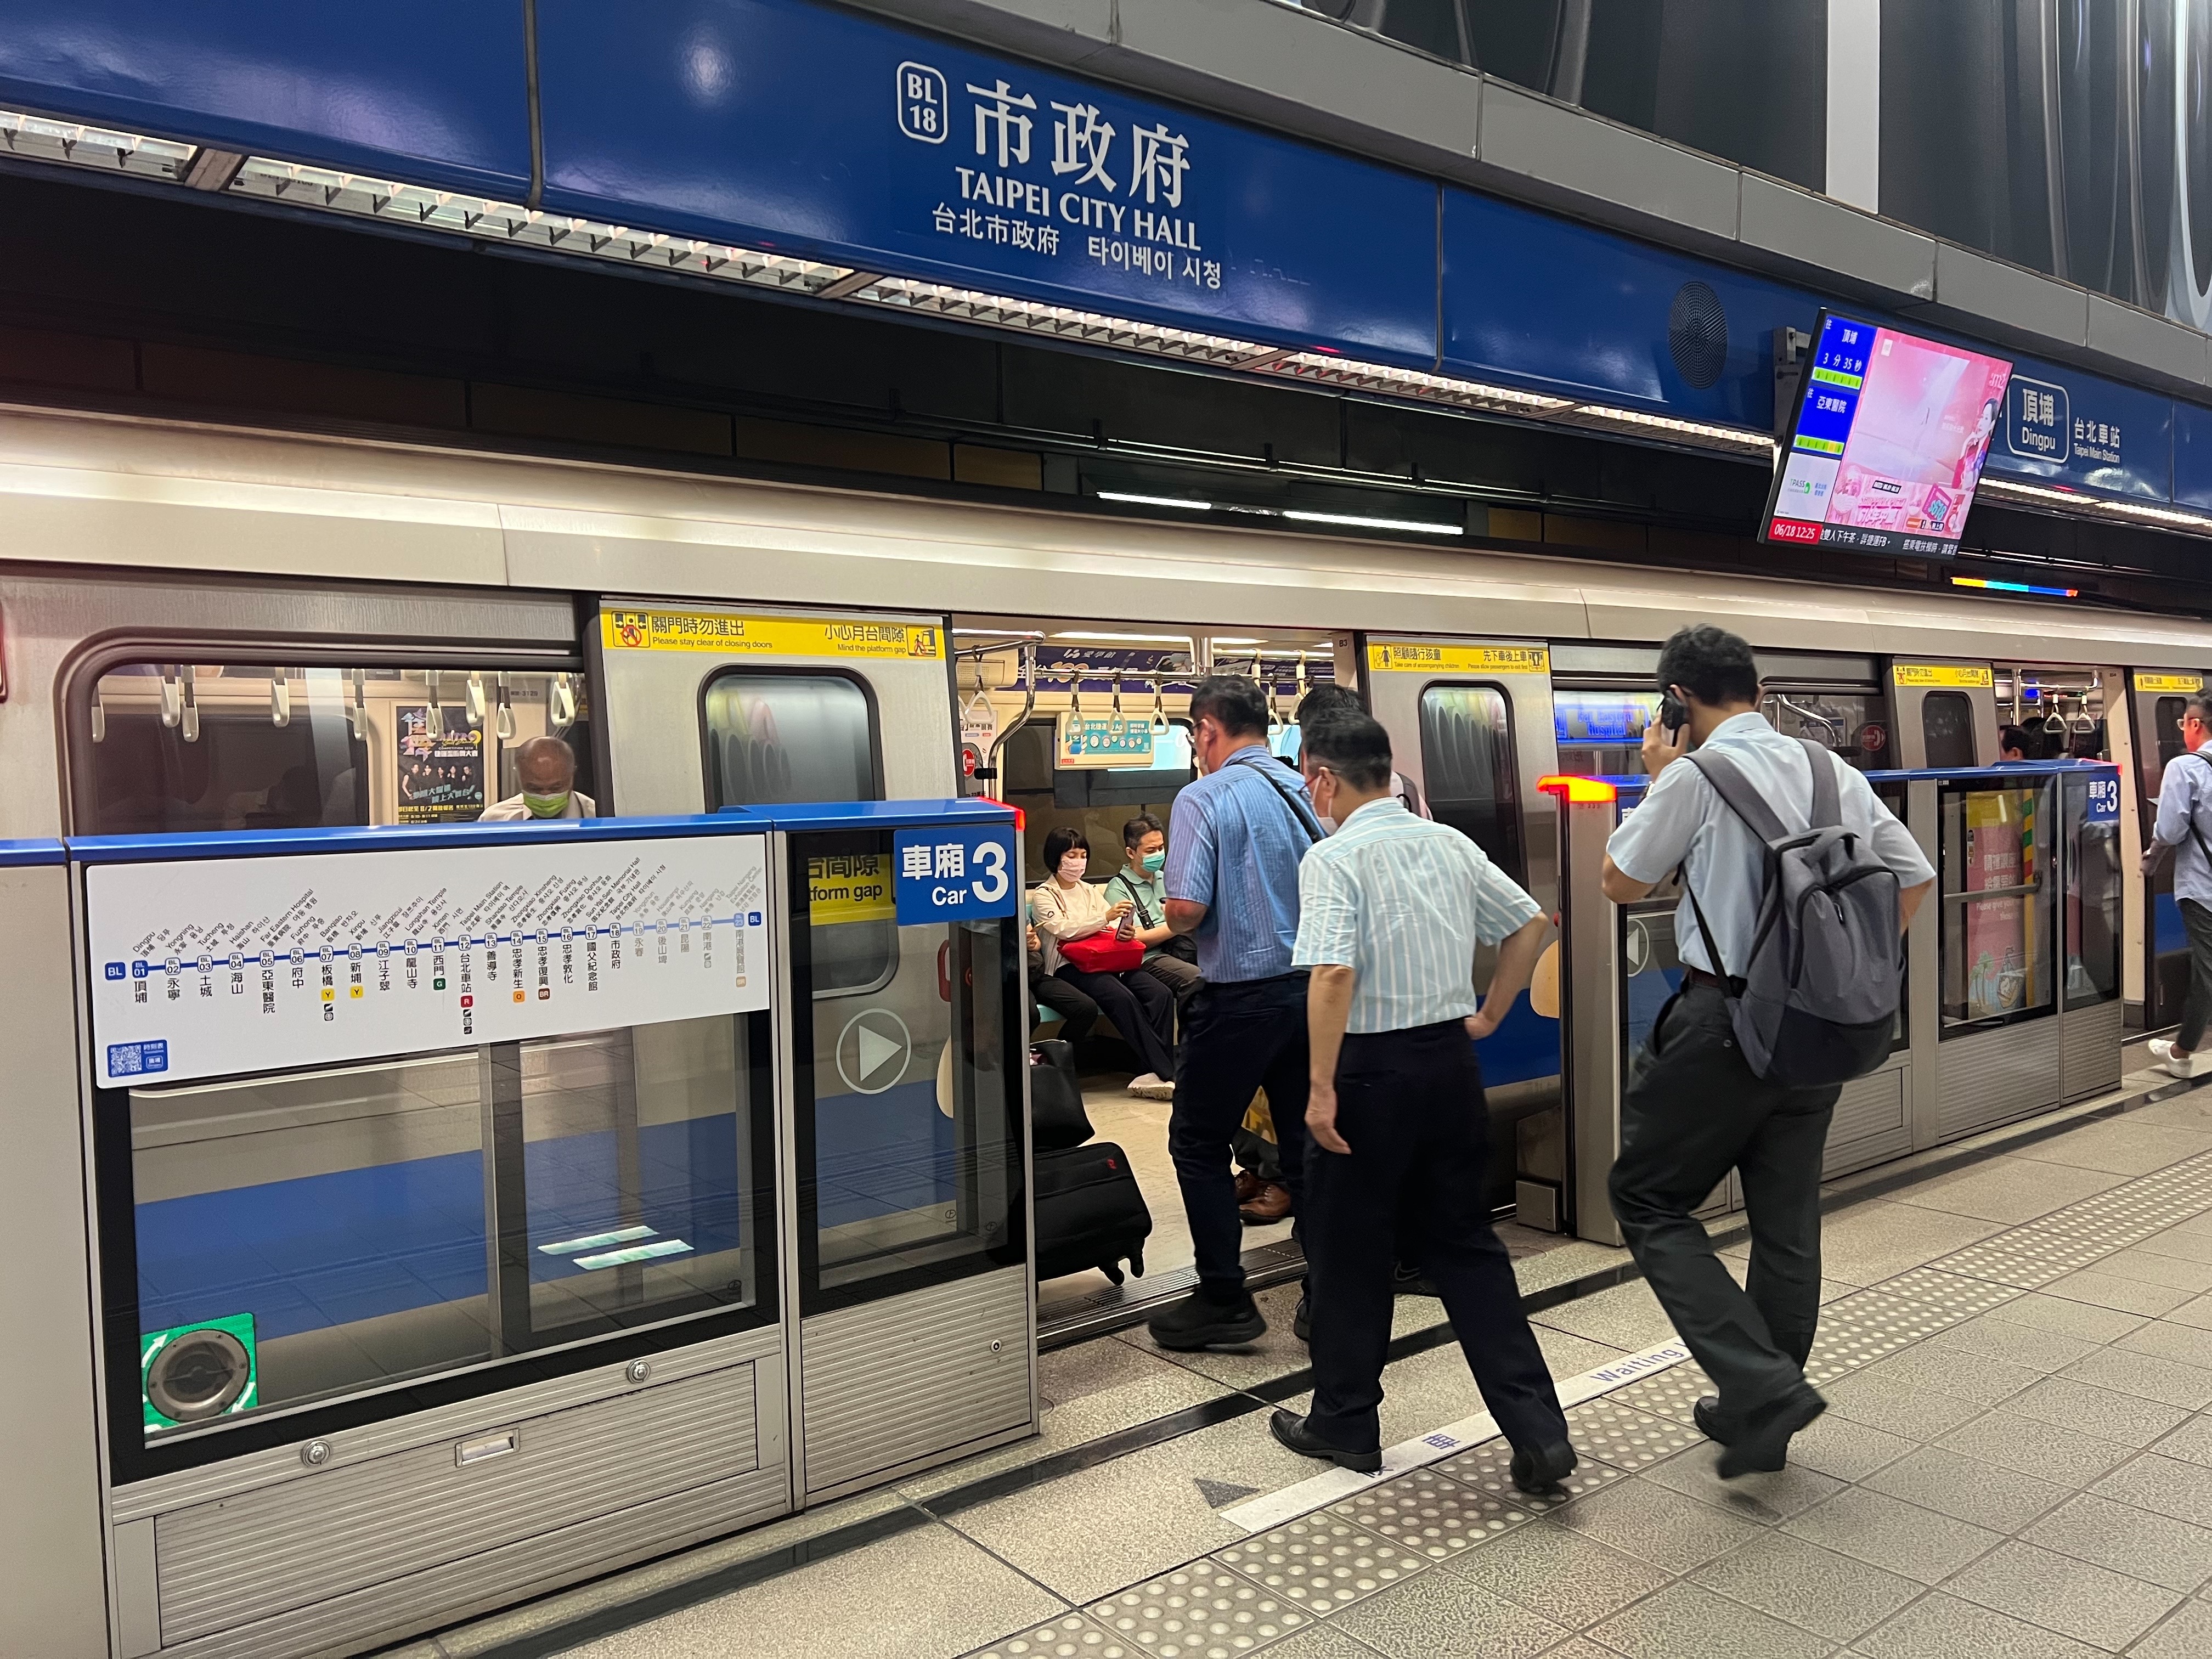 台北捷运去年起陆续在多个车站推出日韩语到站广播，全线117个车站已于昨天全数完备，另9月底前完成全线车站加注日、韩语指标。记者林佳彣／摄影